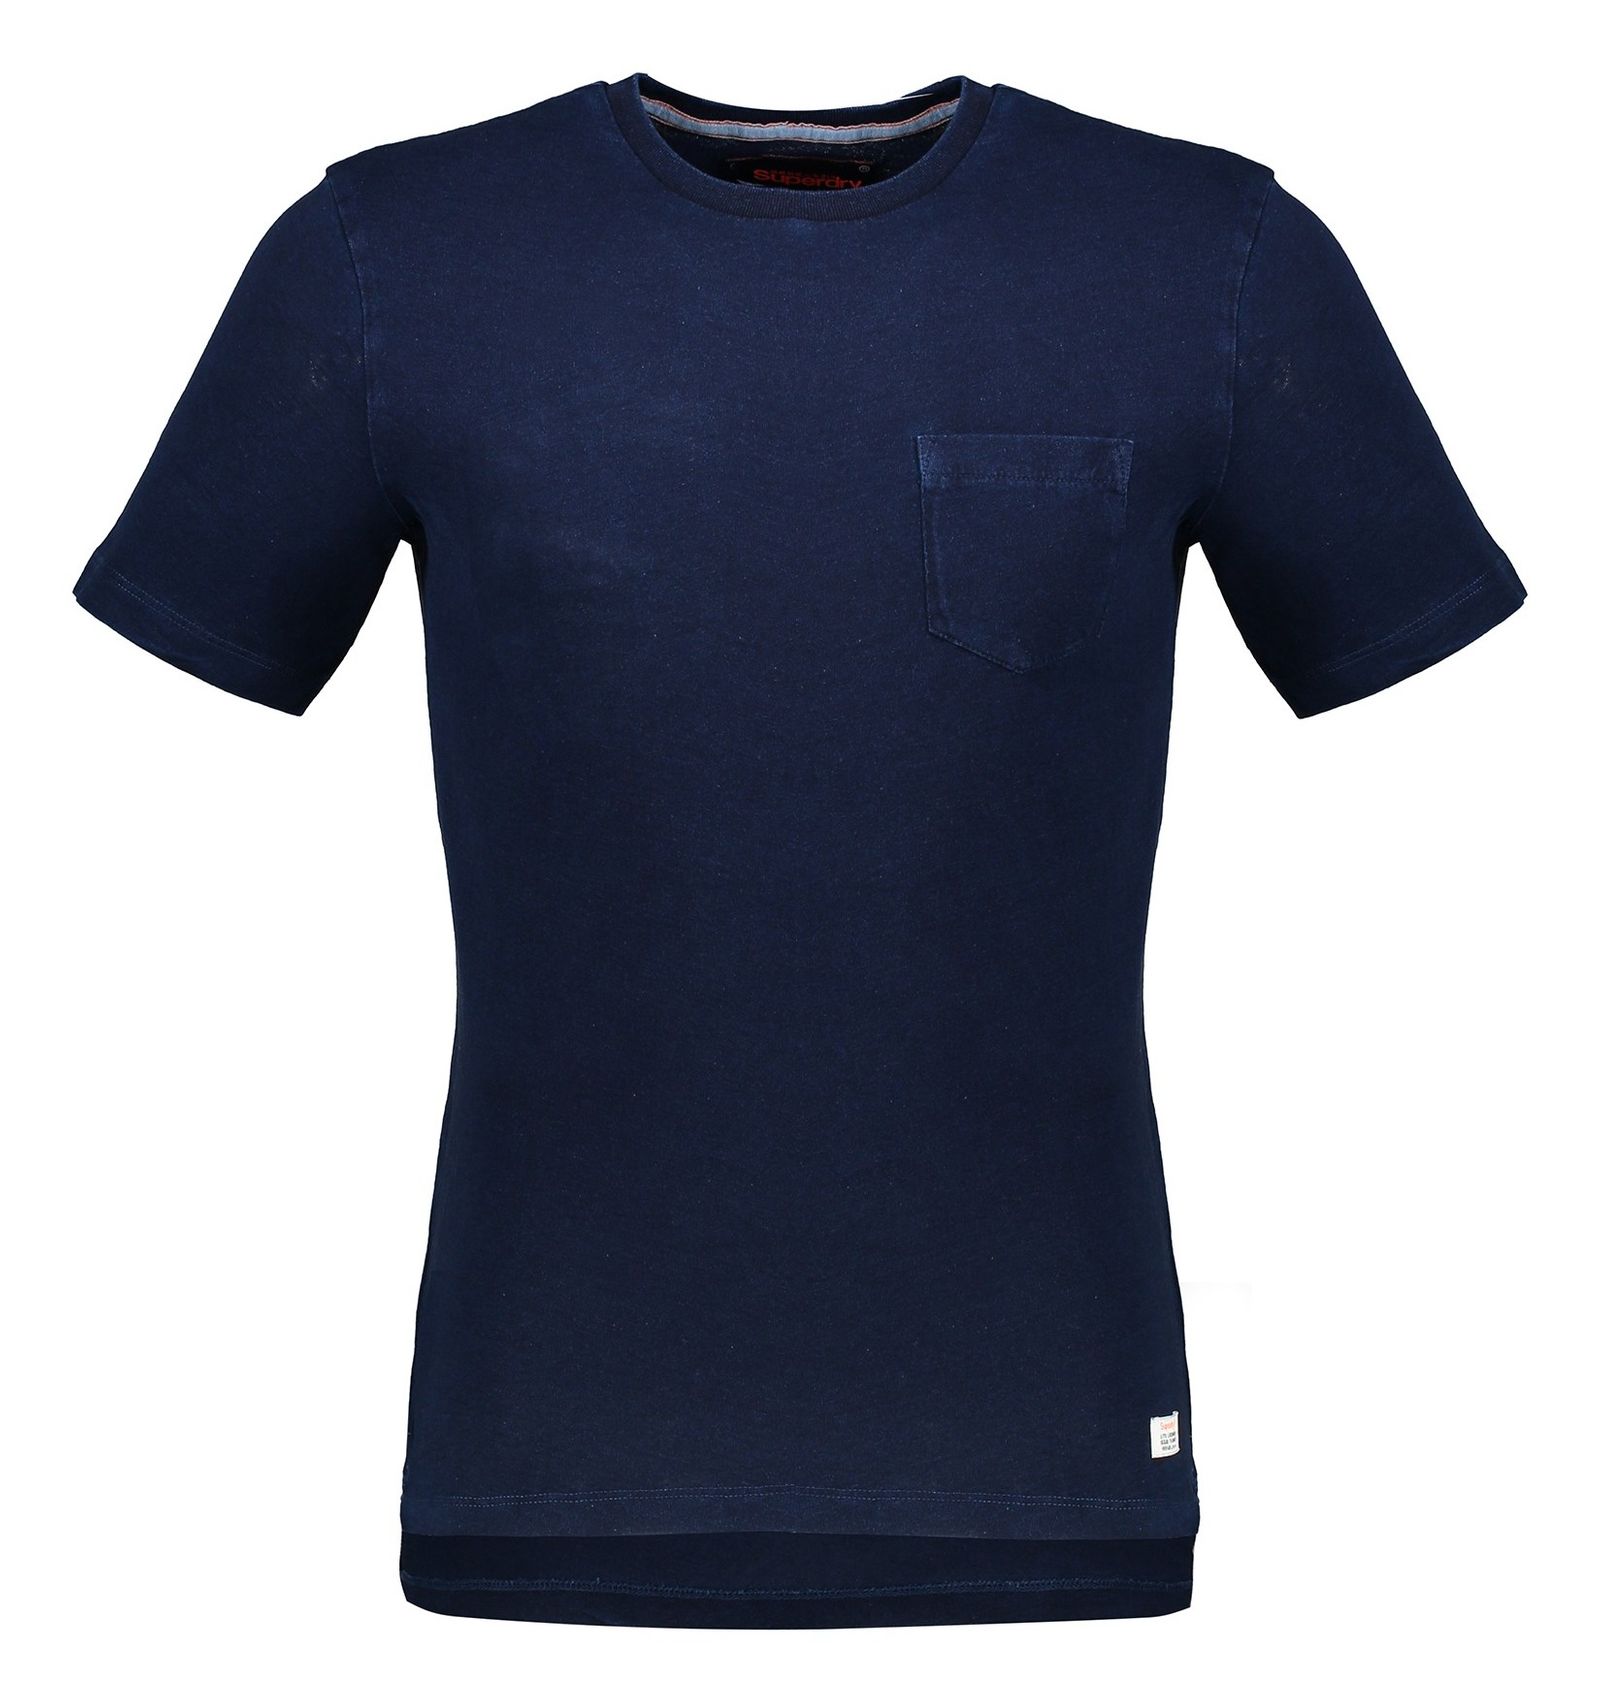 تی شرت نخی یقه گرد مردانه - سوپردرای - سرمه اي   - 1